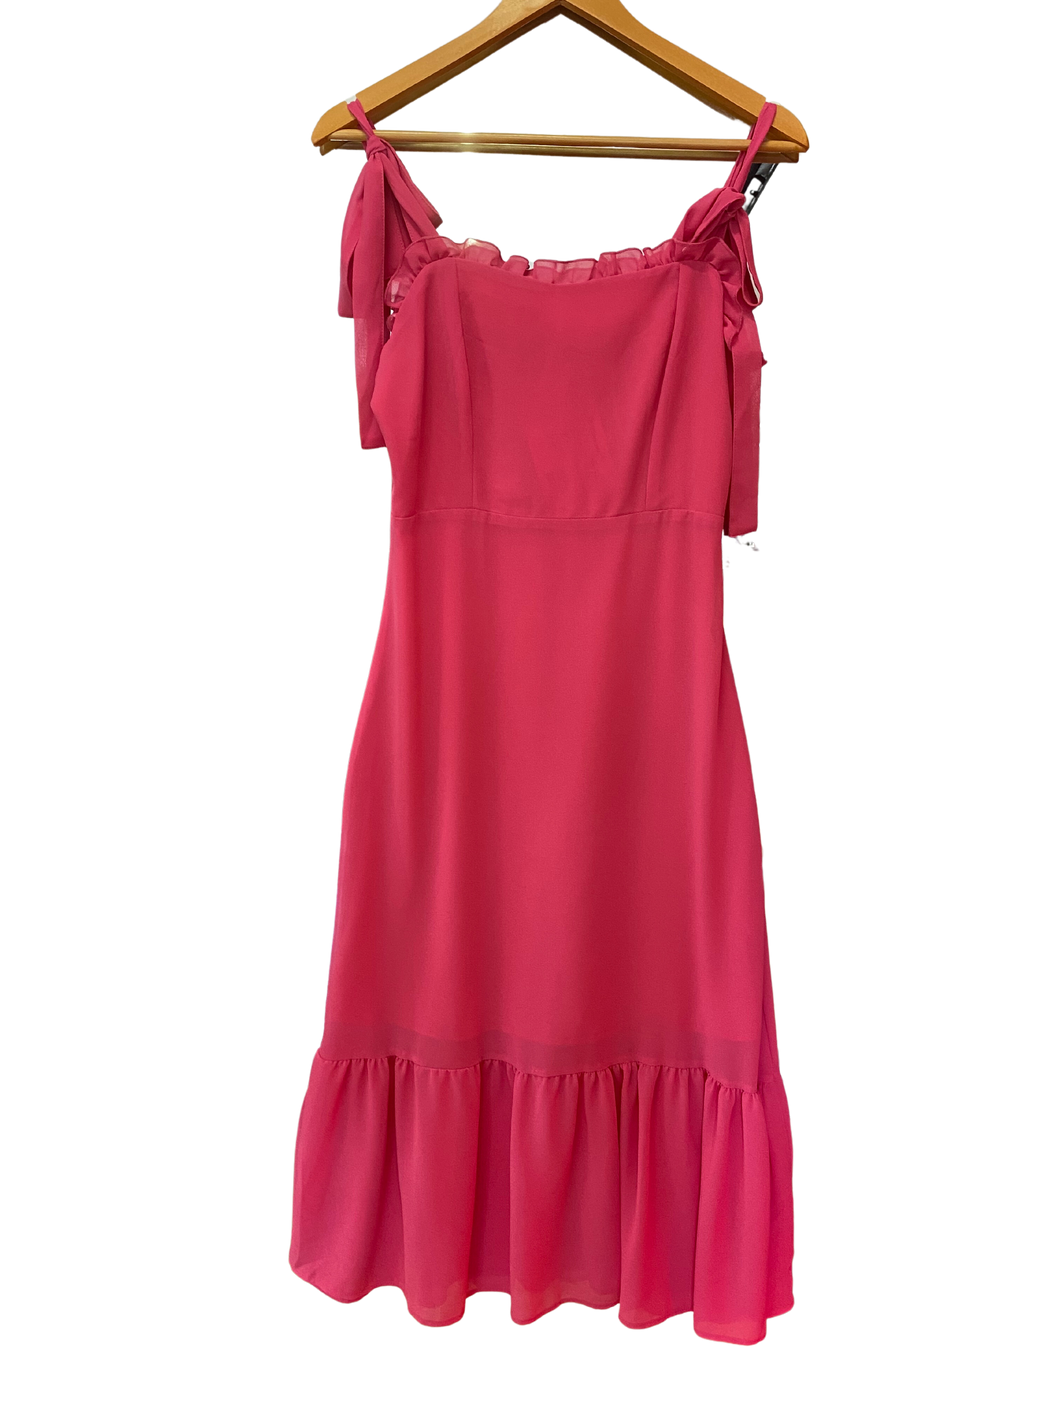 Hot Pink Summer Dress